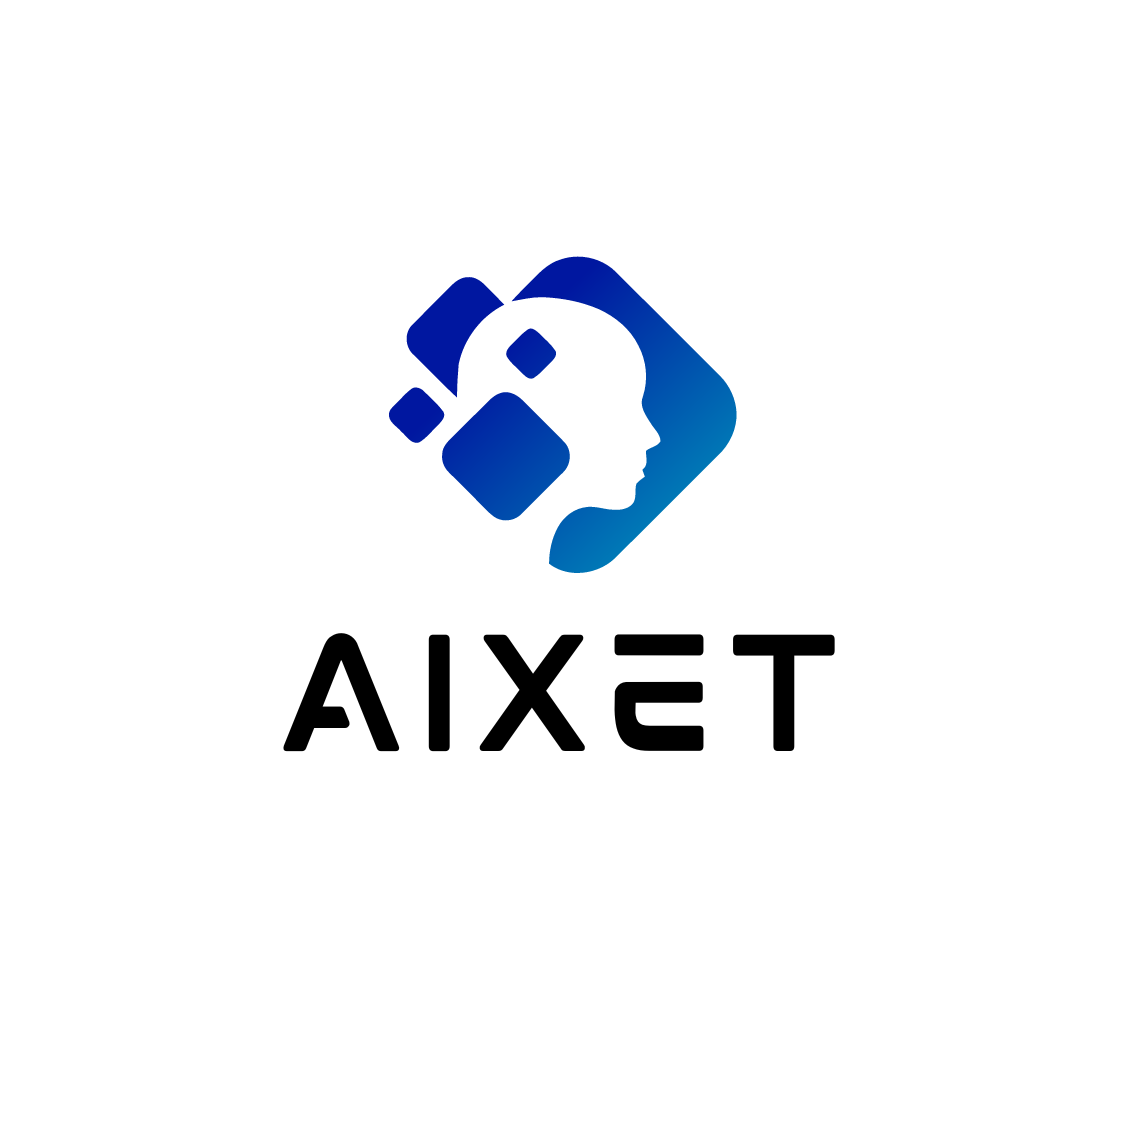 aixet.com - domain for sale